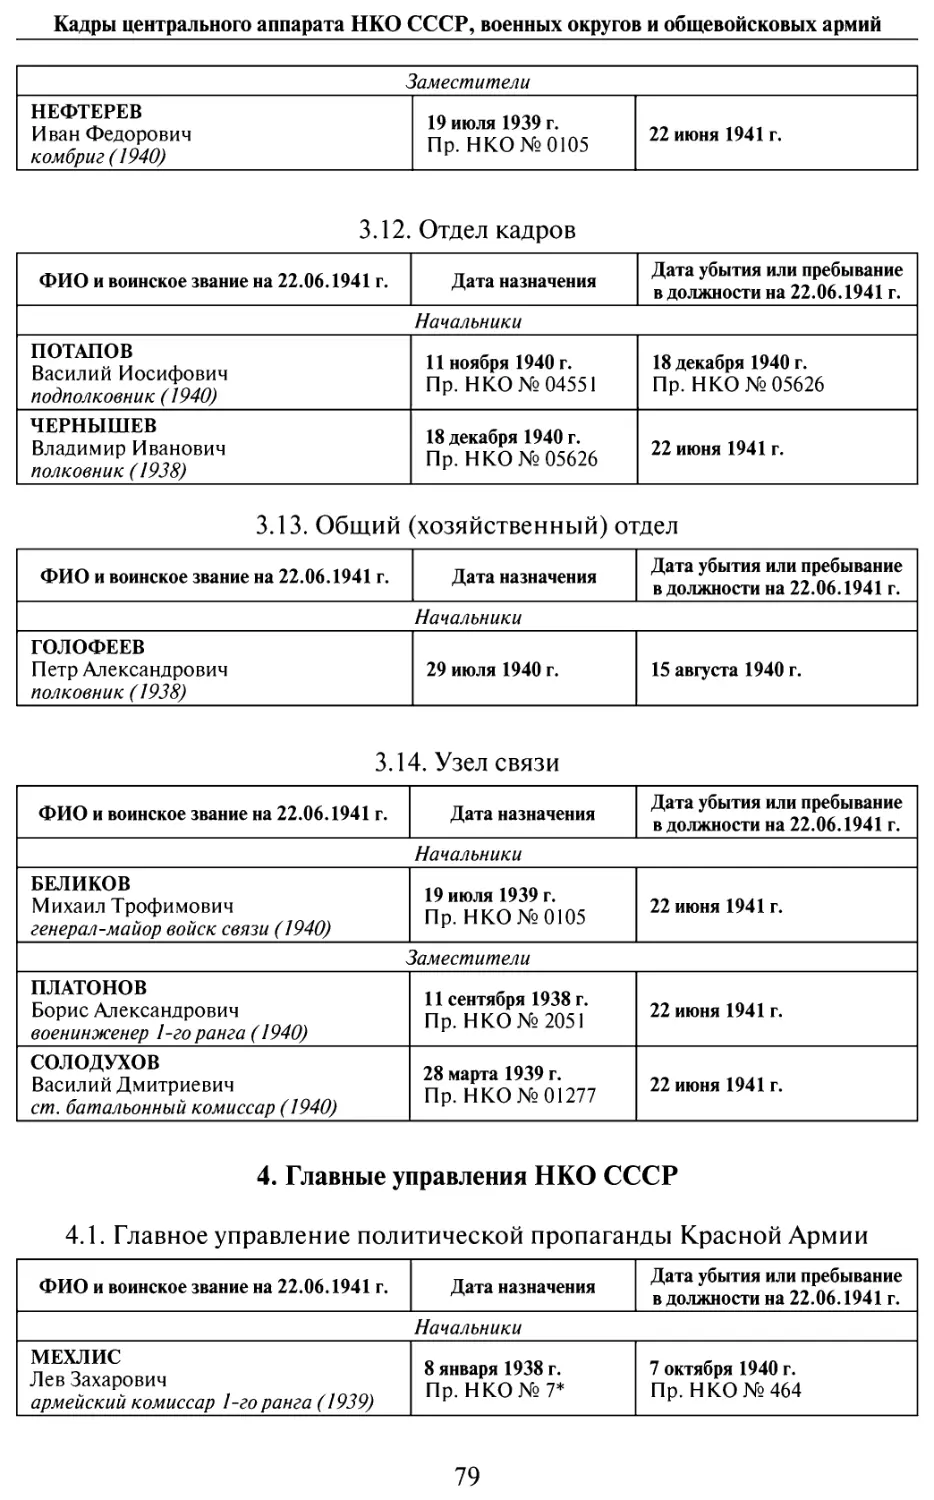 4. Главные управления НКО СССР